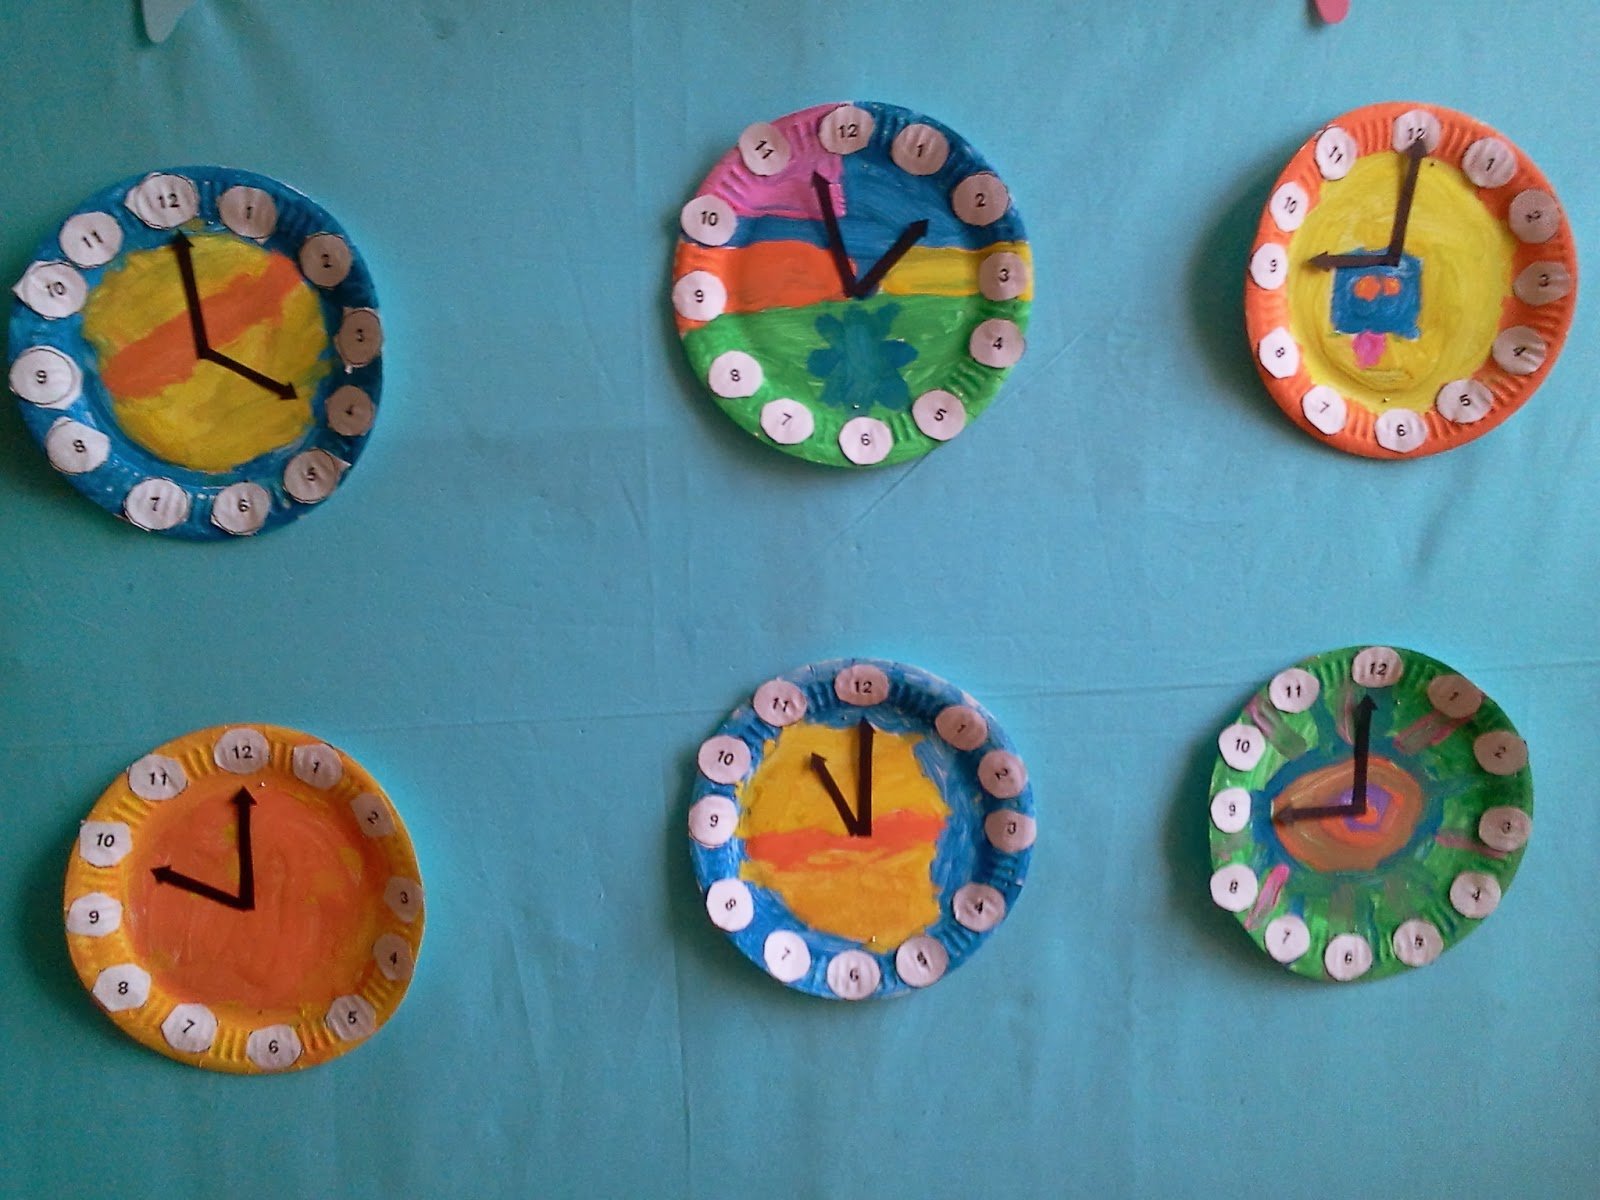 Занятие часы подготовительная группа. Часы подготовительная группа. Часы для занятия в детском саду. Часы для занятий с детьми. Часы занятие в подготовительной группе.